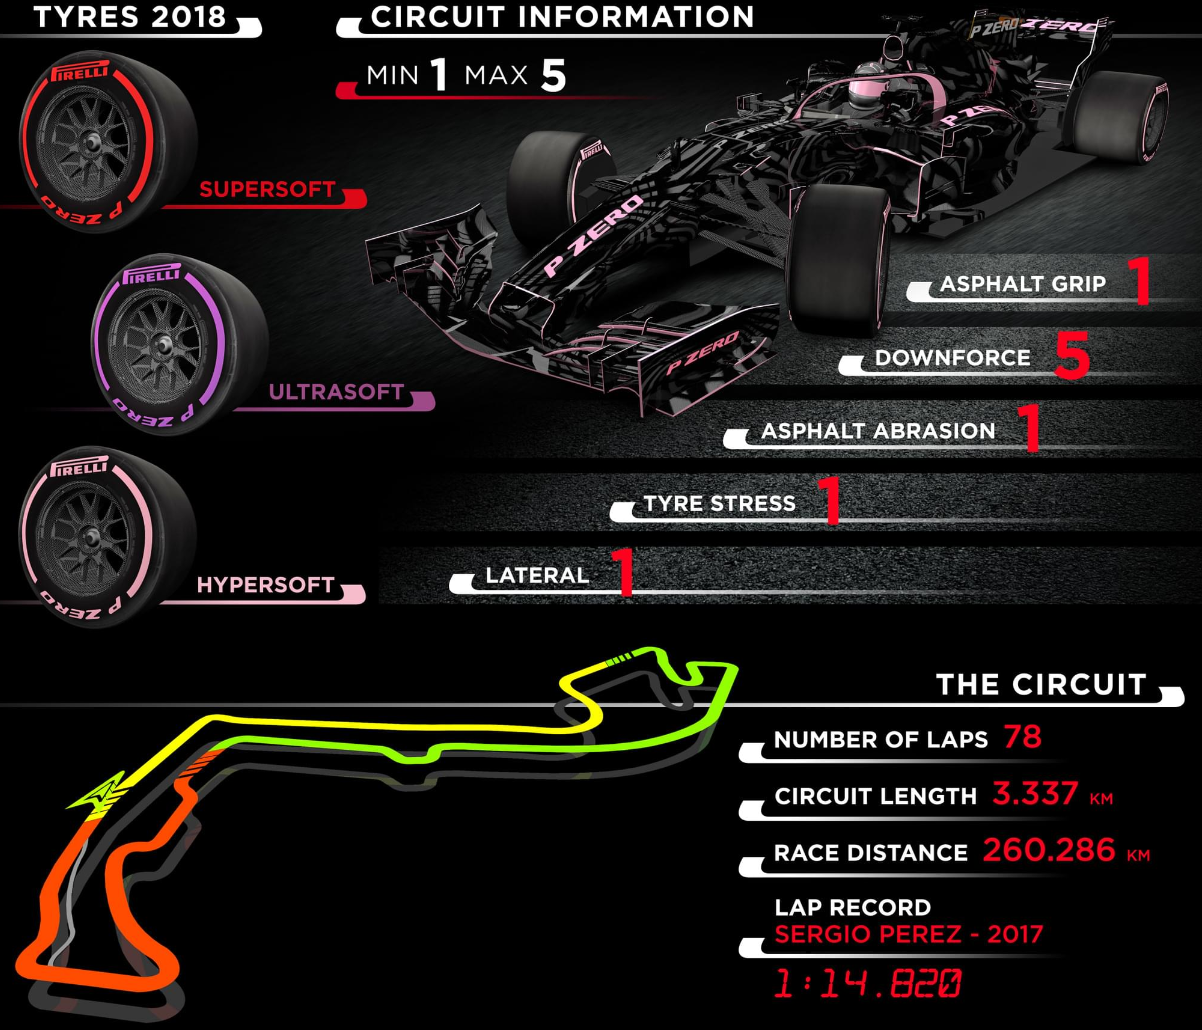 Informace Pirelli o pneumatikách a okruhu v Monaku